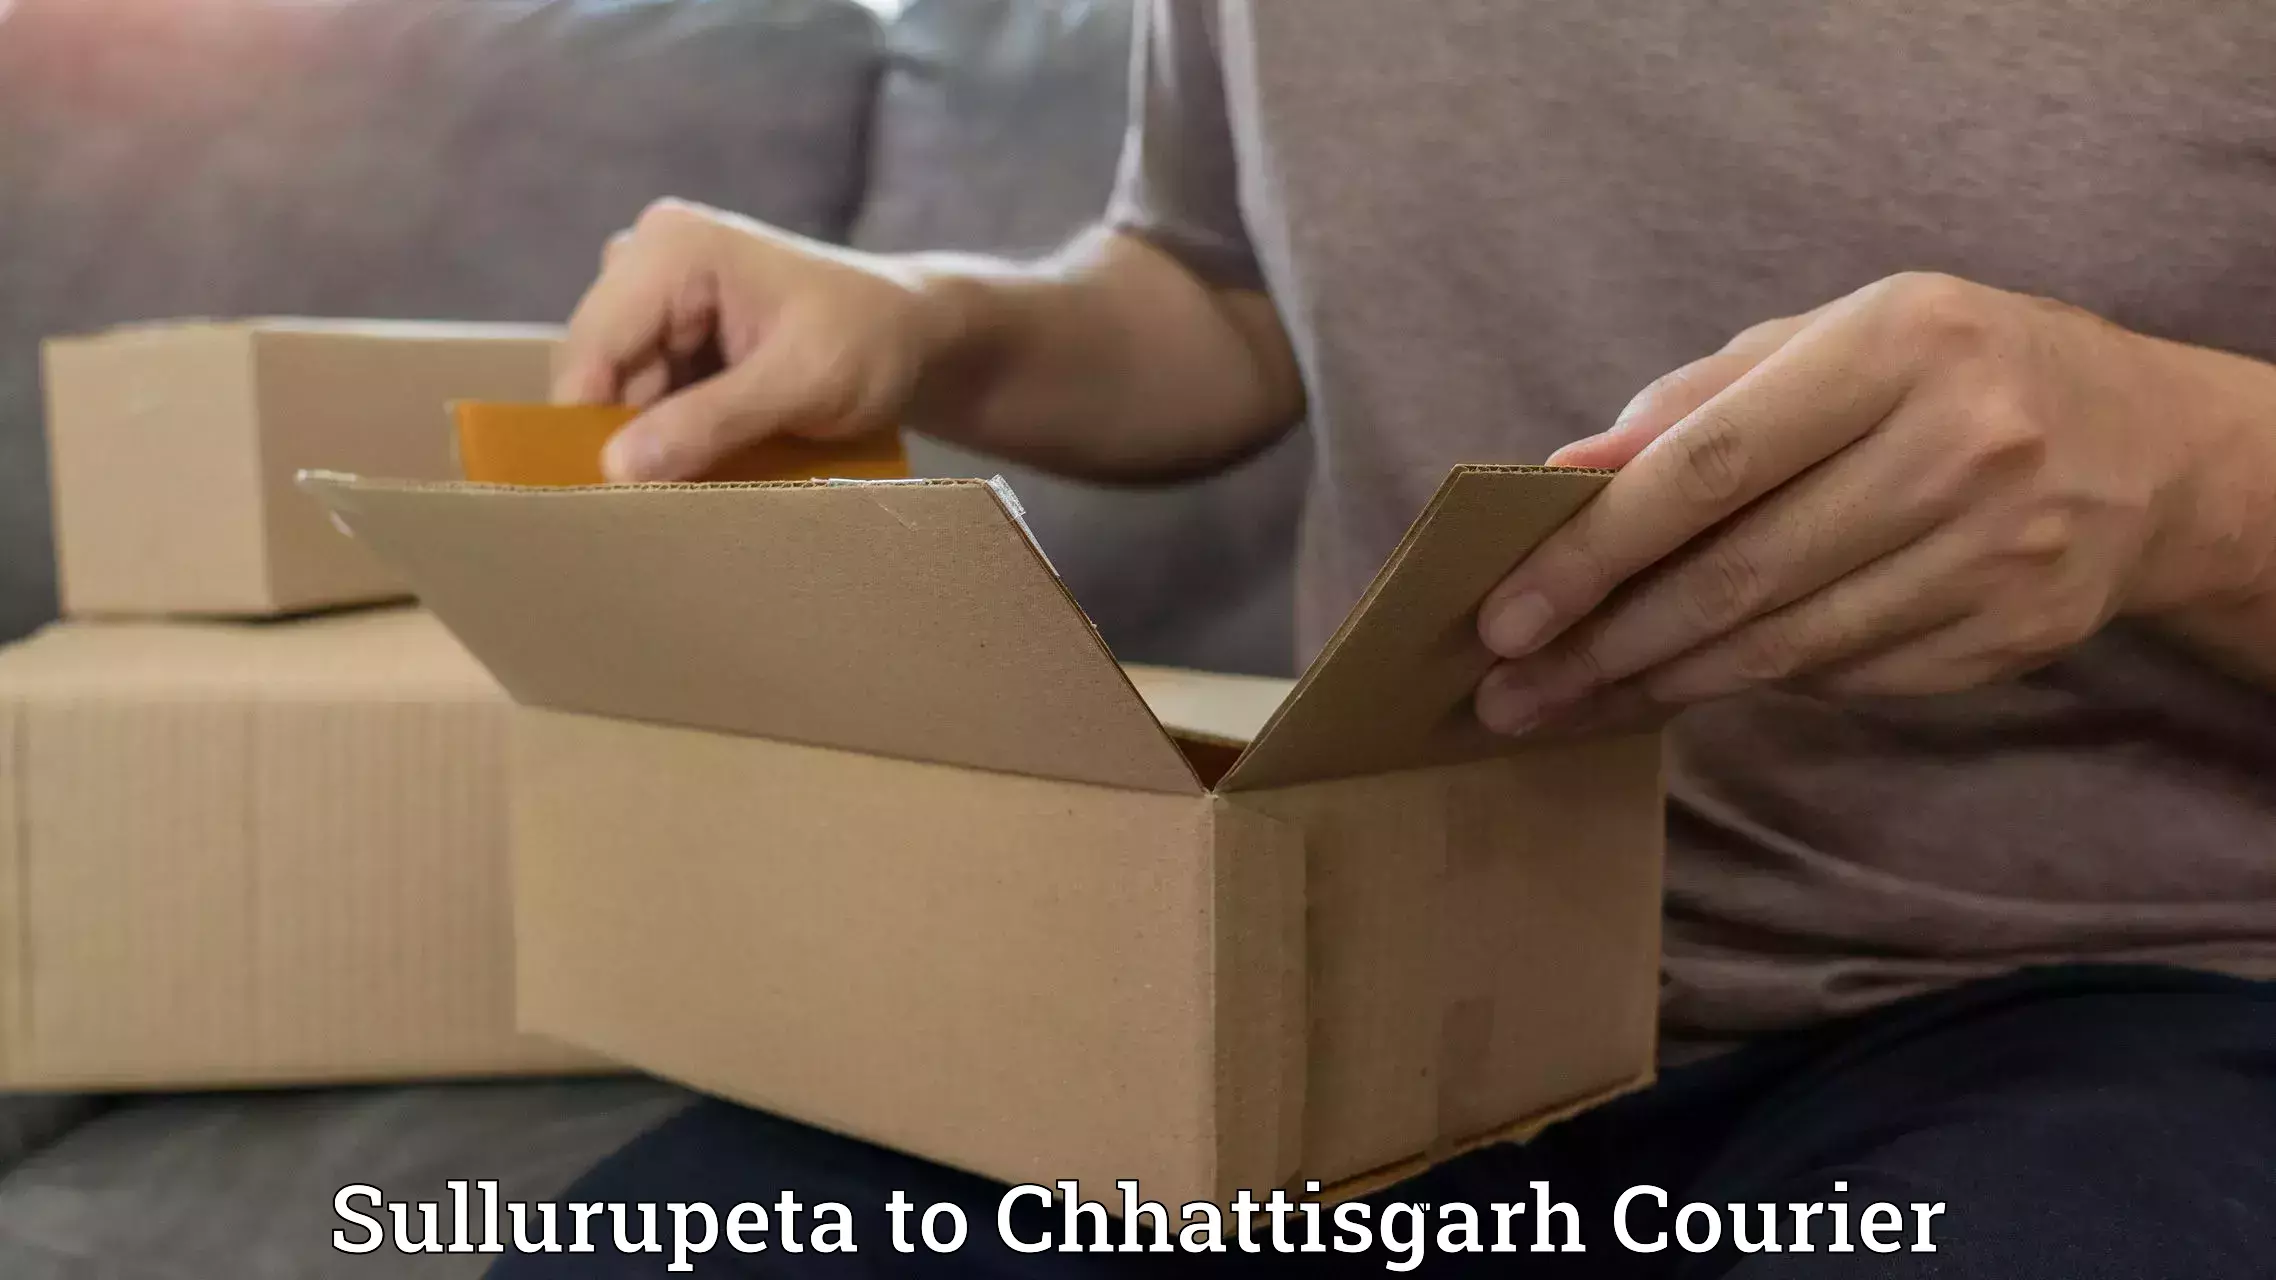 Postal and courier services in Sullurupeta to Raigarh Chhattisgarh